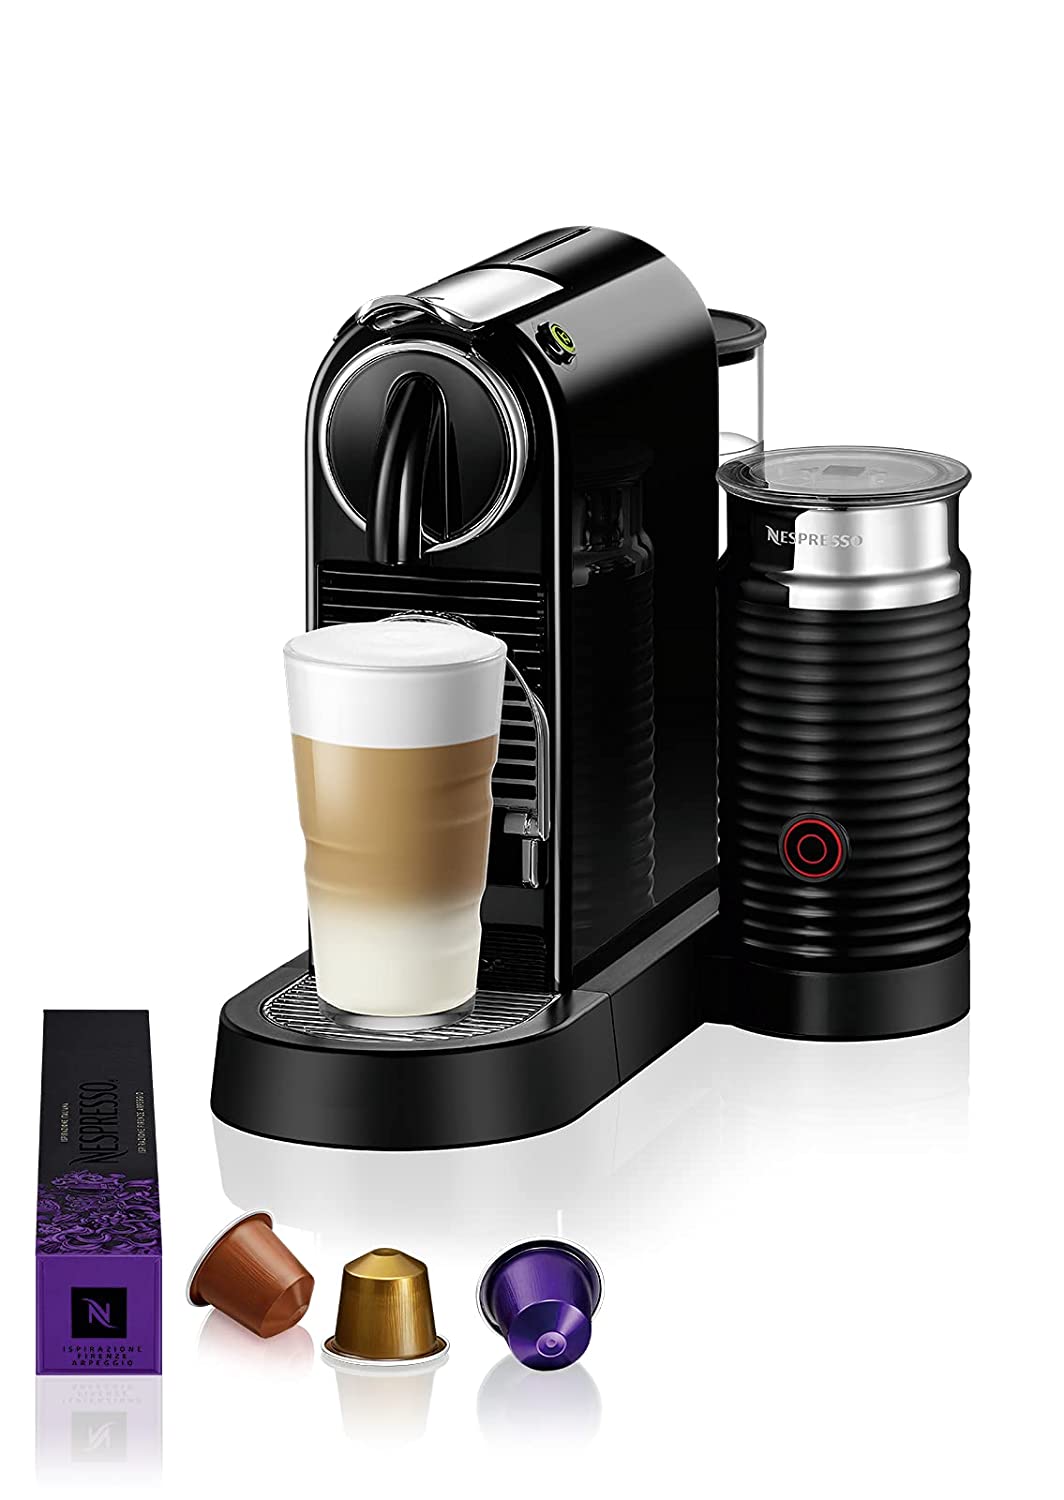 Lade være med Prestige skraber ChefWave Espresso Machine For Nespresso (Black), Capsule